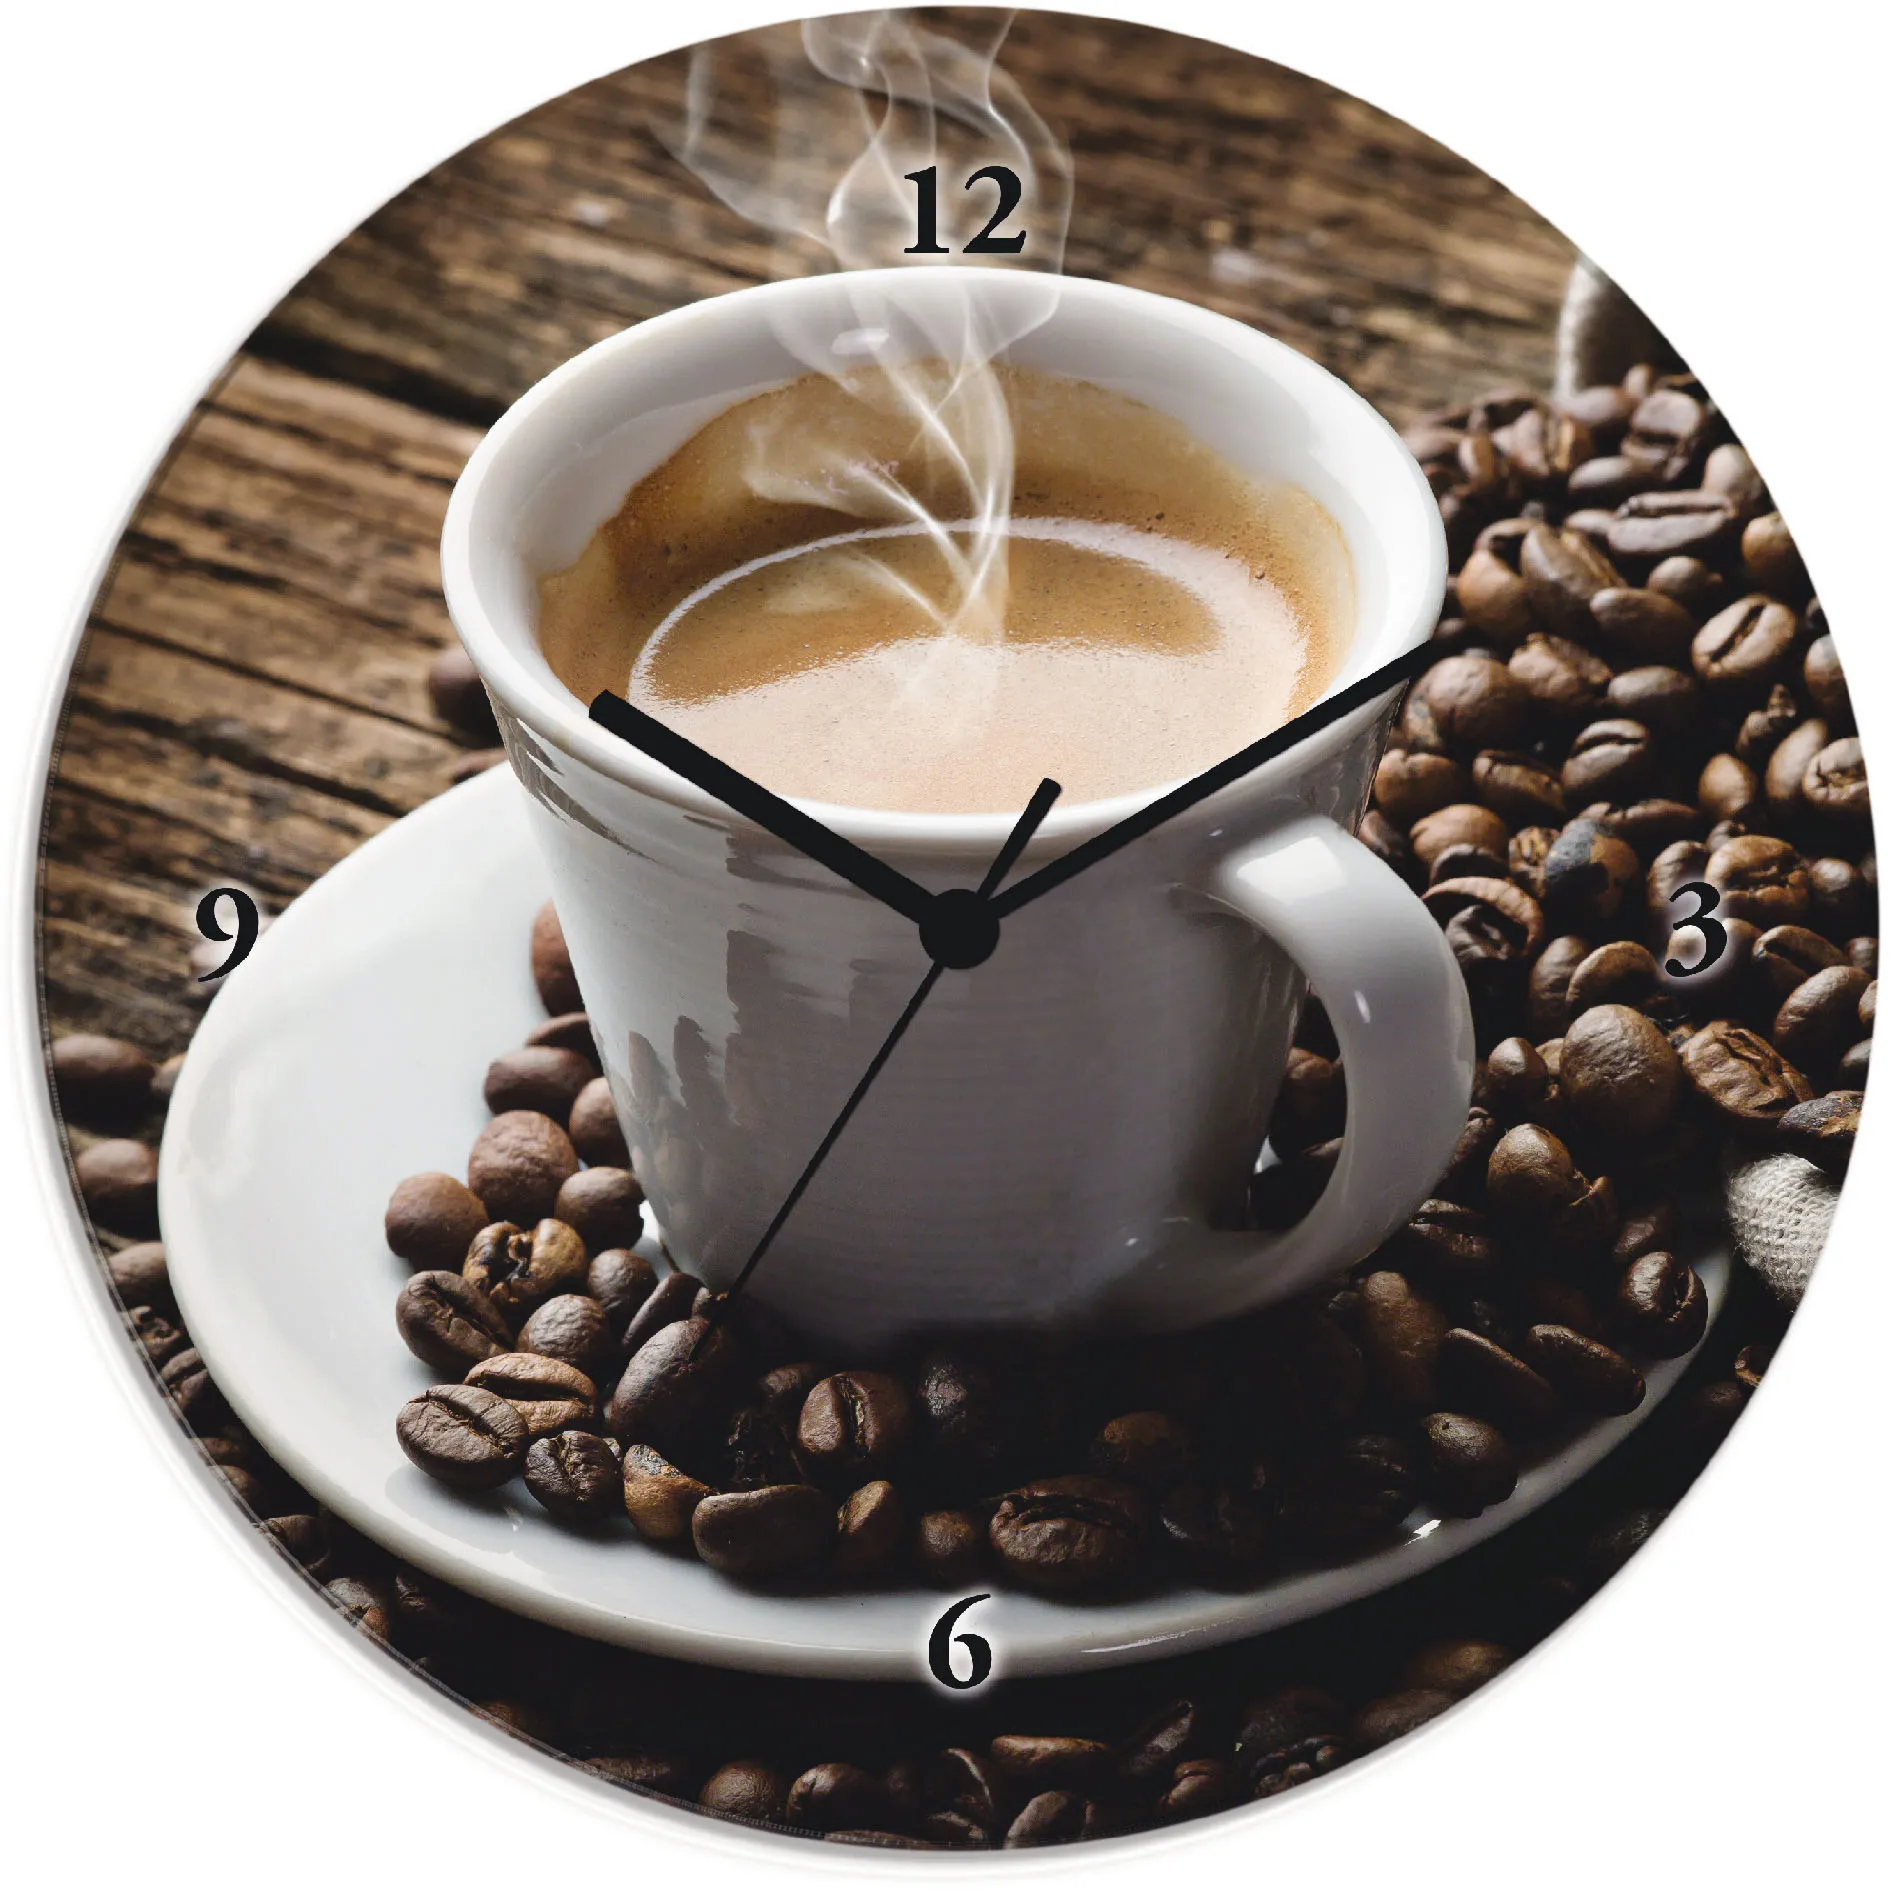 Artland Wanduhr »Heißer Kaffee - dampfender Kaffee«, wahlweise mit Quarz- oder Funkuhrwerk, lautlos ohne Tickgeräusche Artland braun